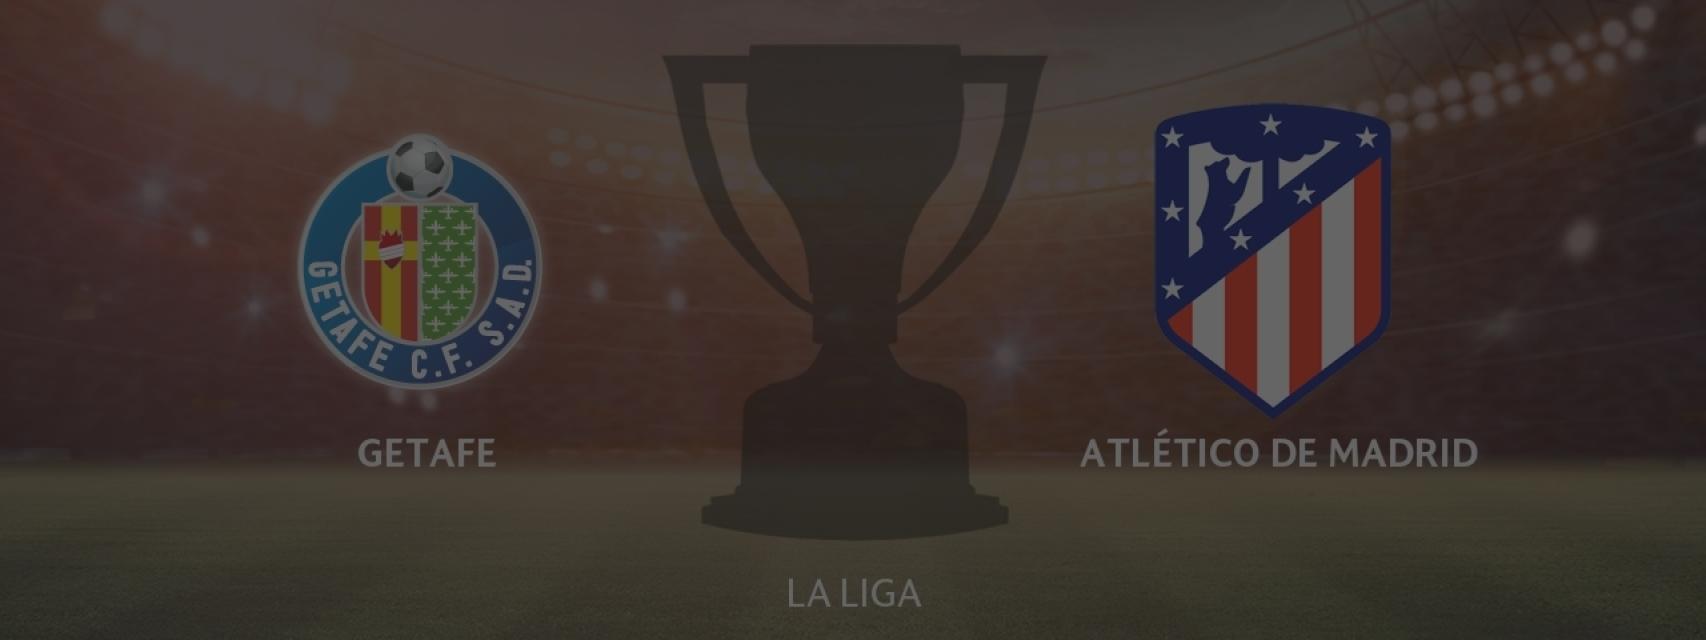 Getafe - Atlético de Madrid, siga en directo el partido de la La Liga